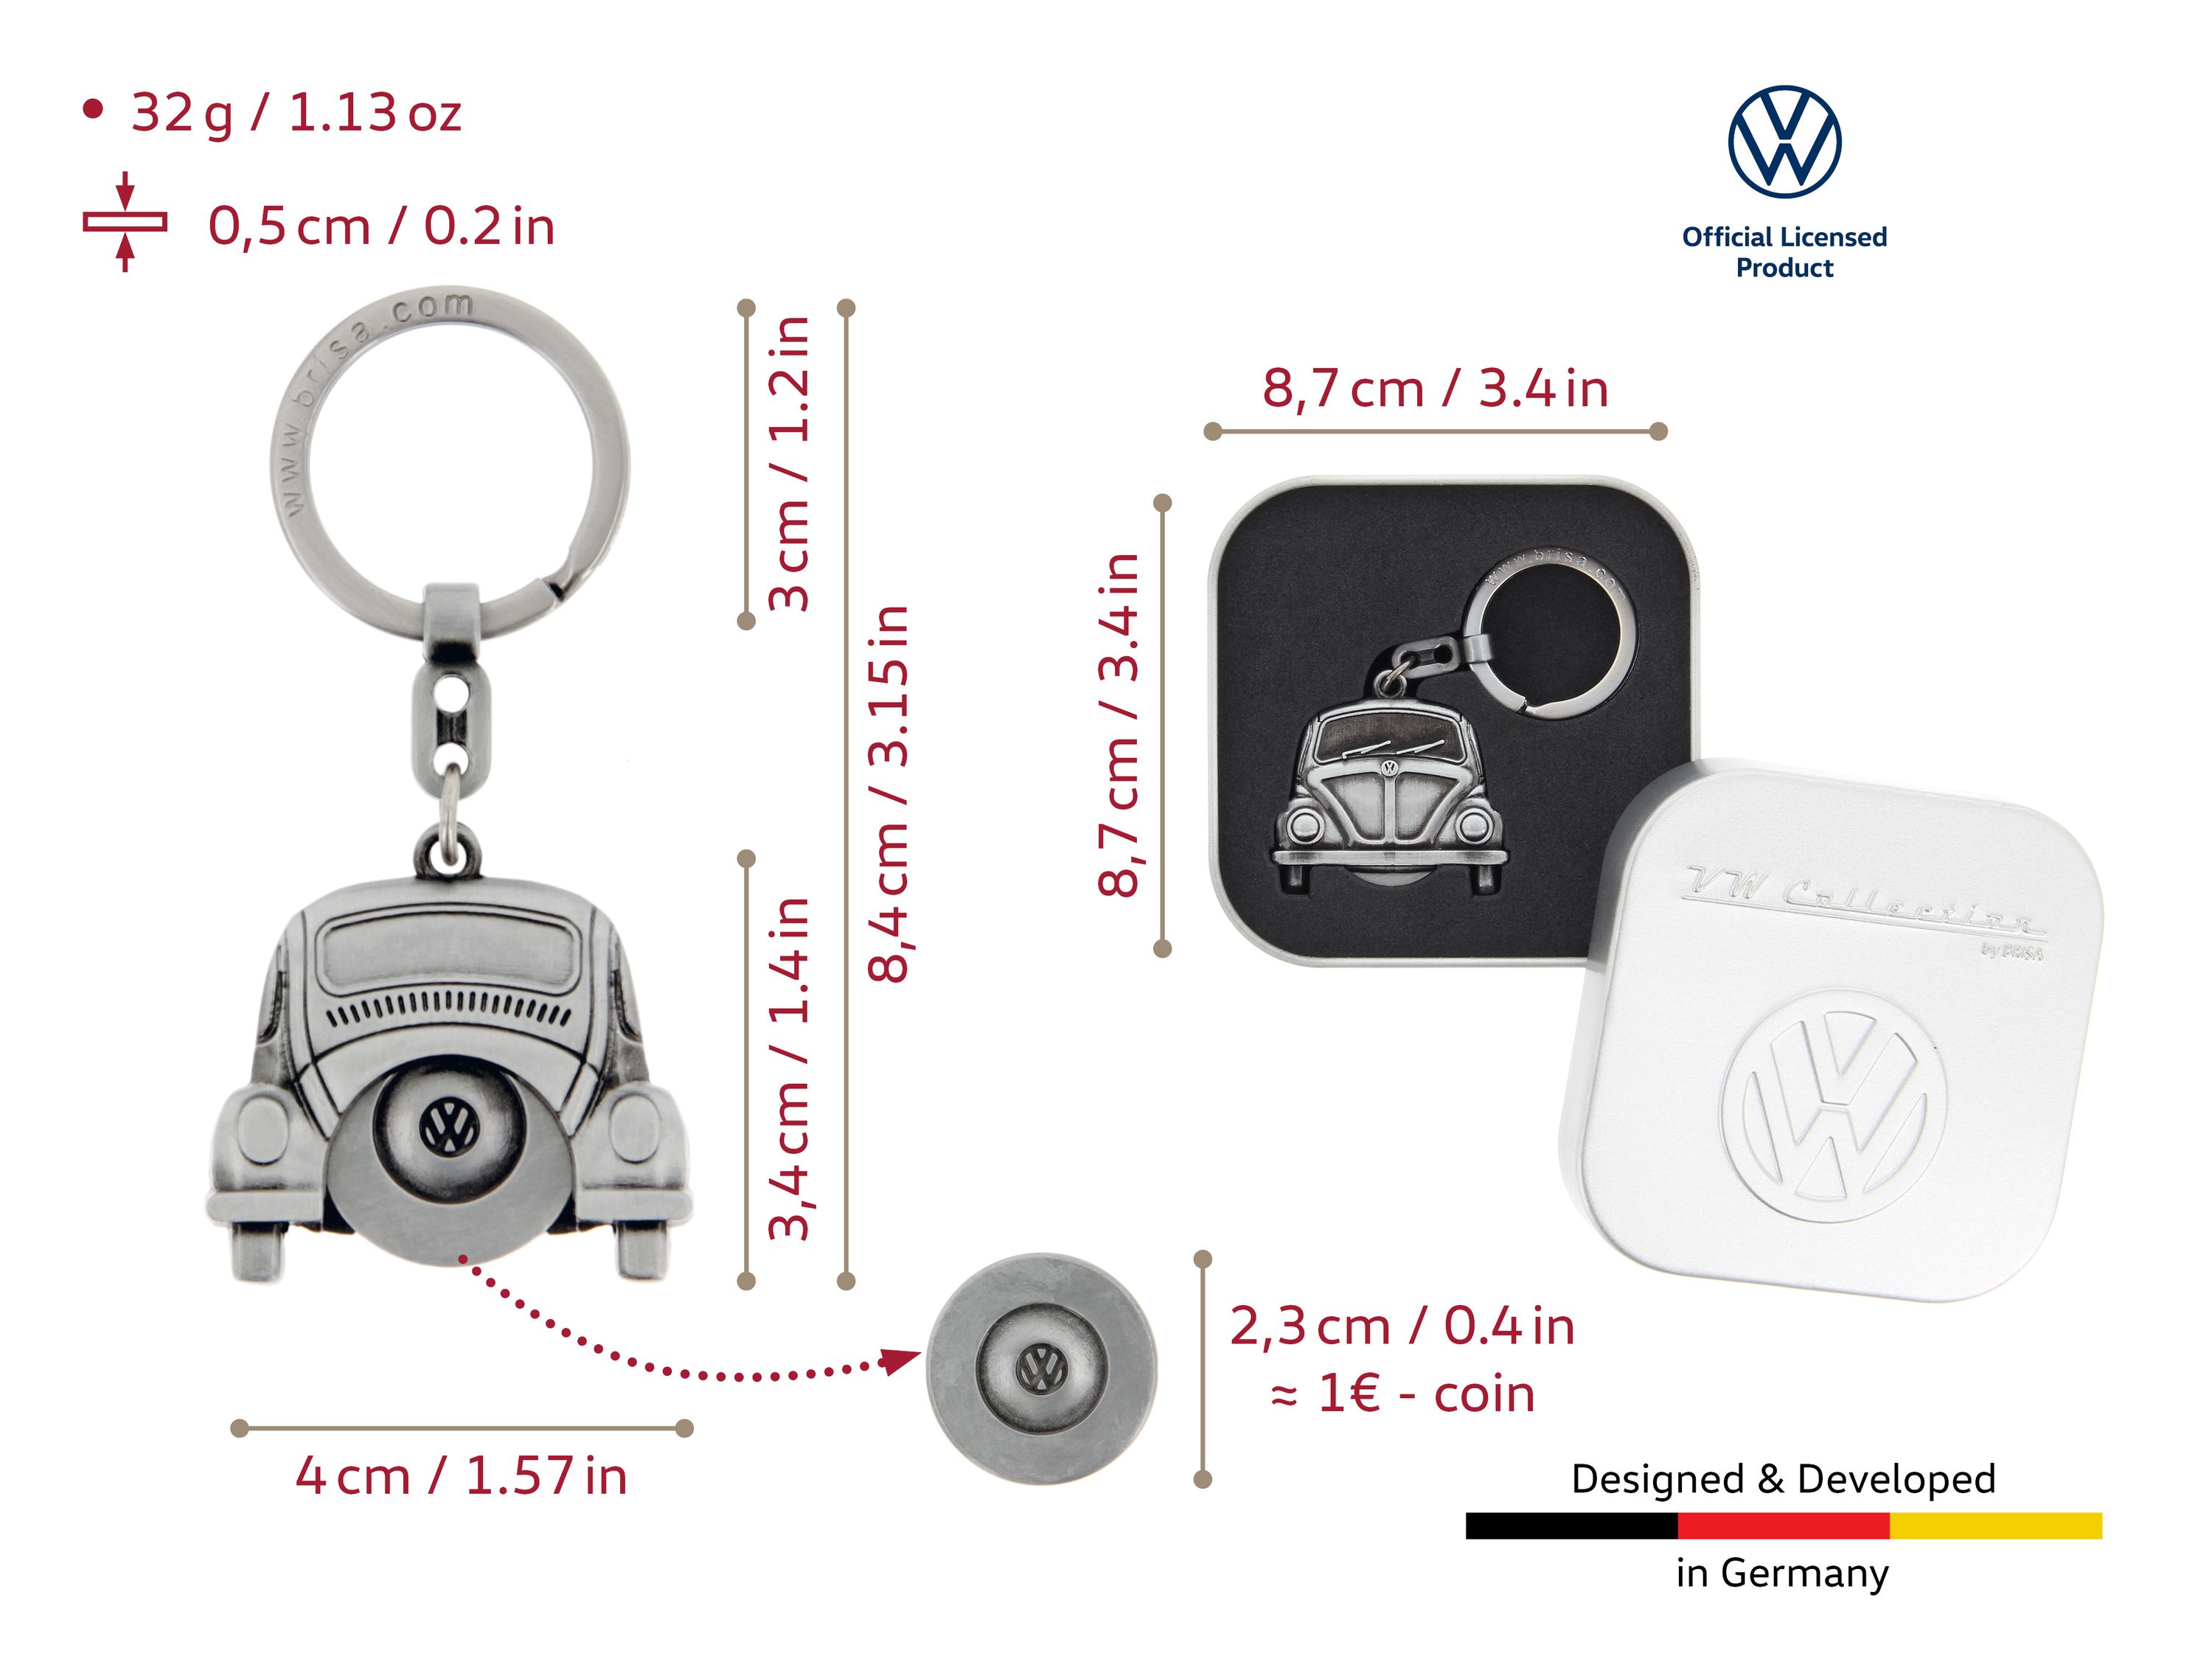 VW Käfer Schlüsselanhänger mit Einkaufswagenchip in Geschenkdose - Antiksilberoptik